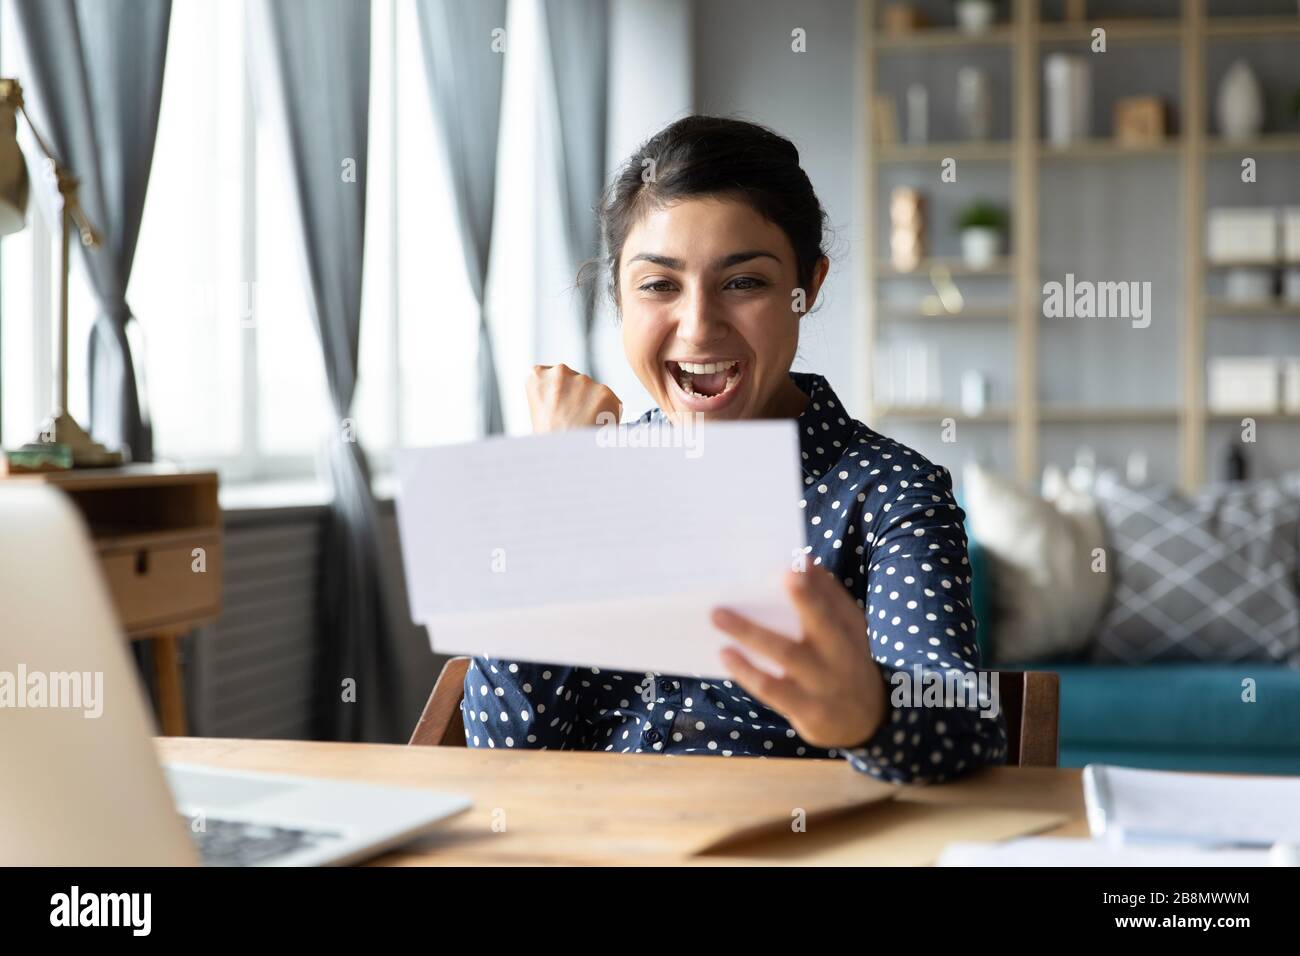 Aufgeregtes indisches Mädchen, das gute Nachrichten in einem Brief liest Stockfoto